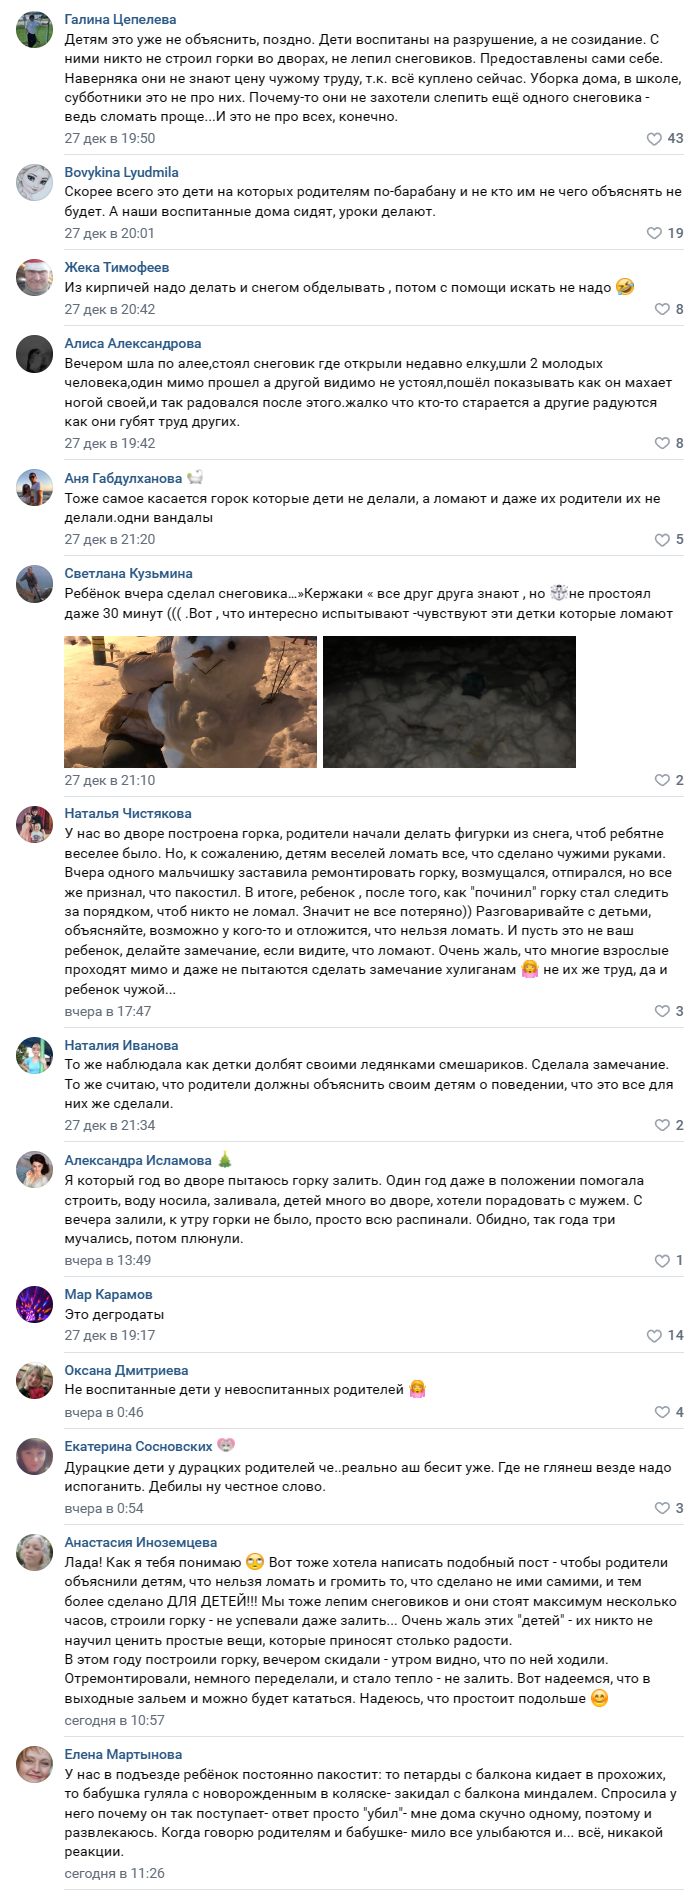 В Верхней Салде юные вандалы сломали снежные фигуры в парке Гагарина